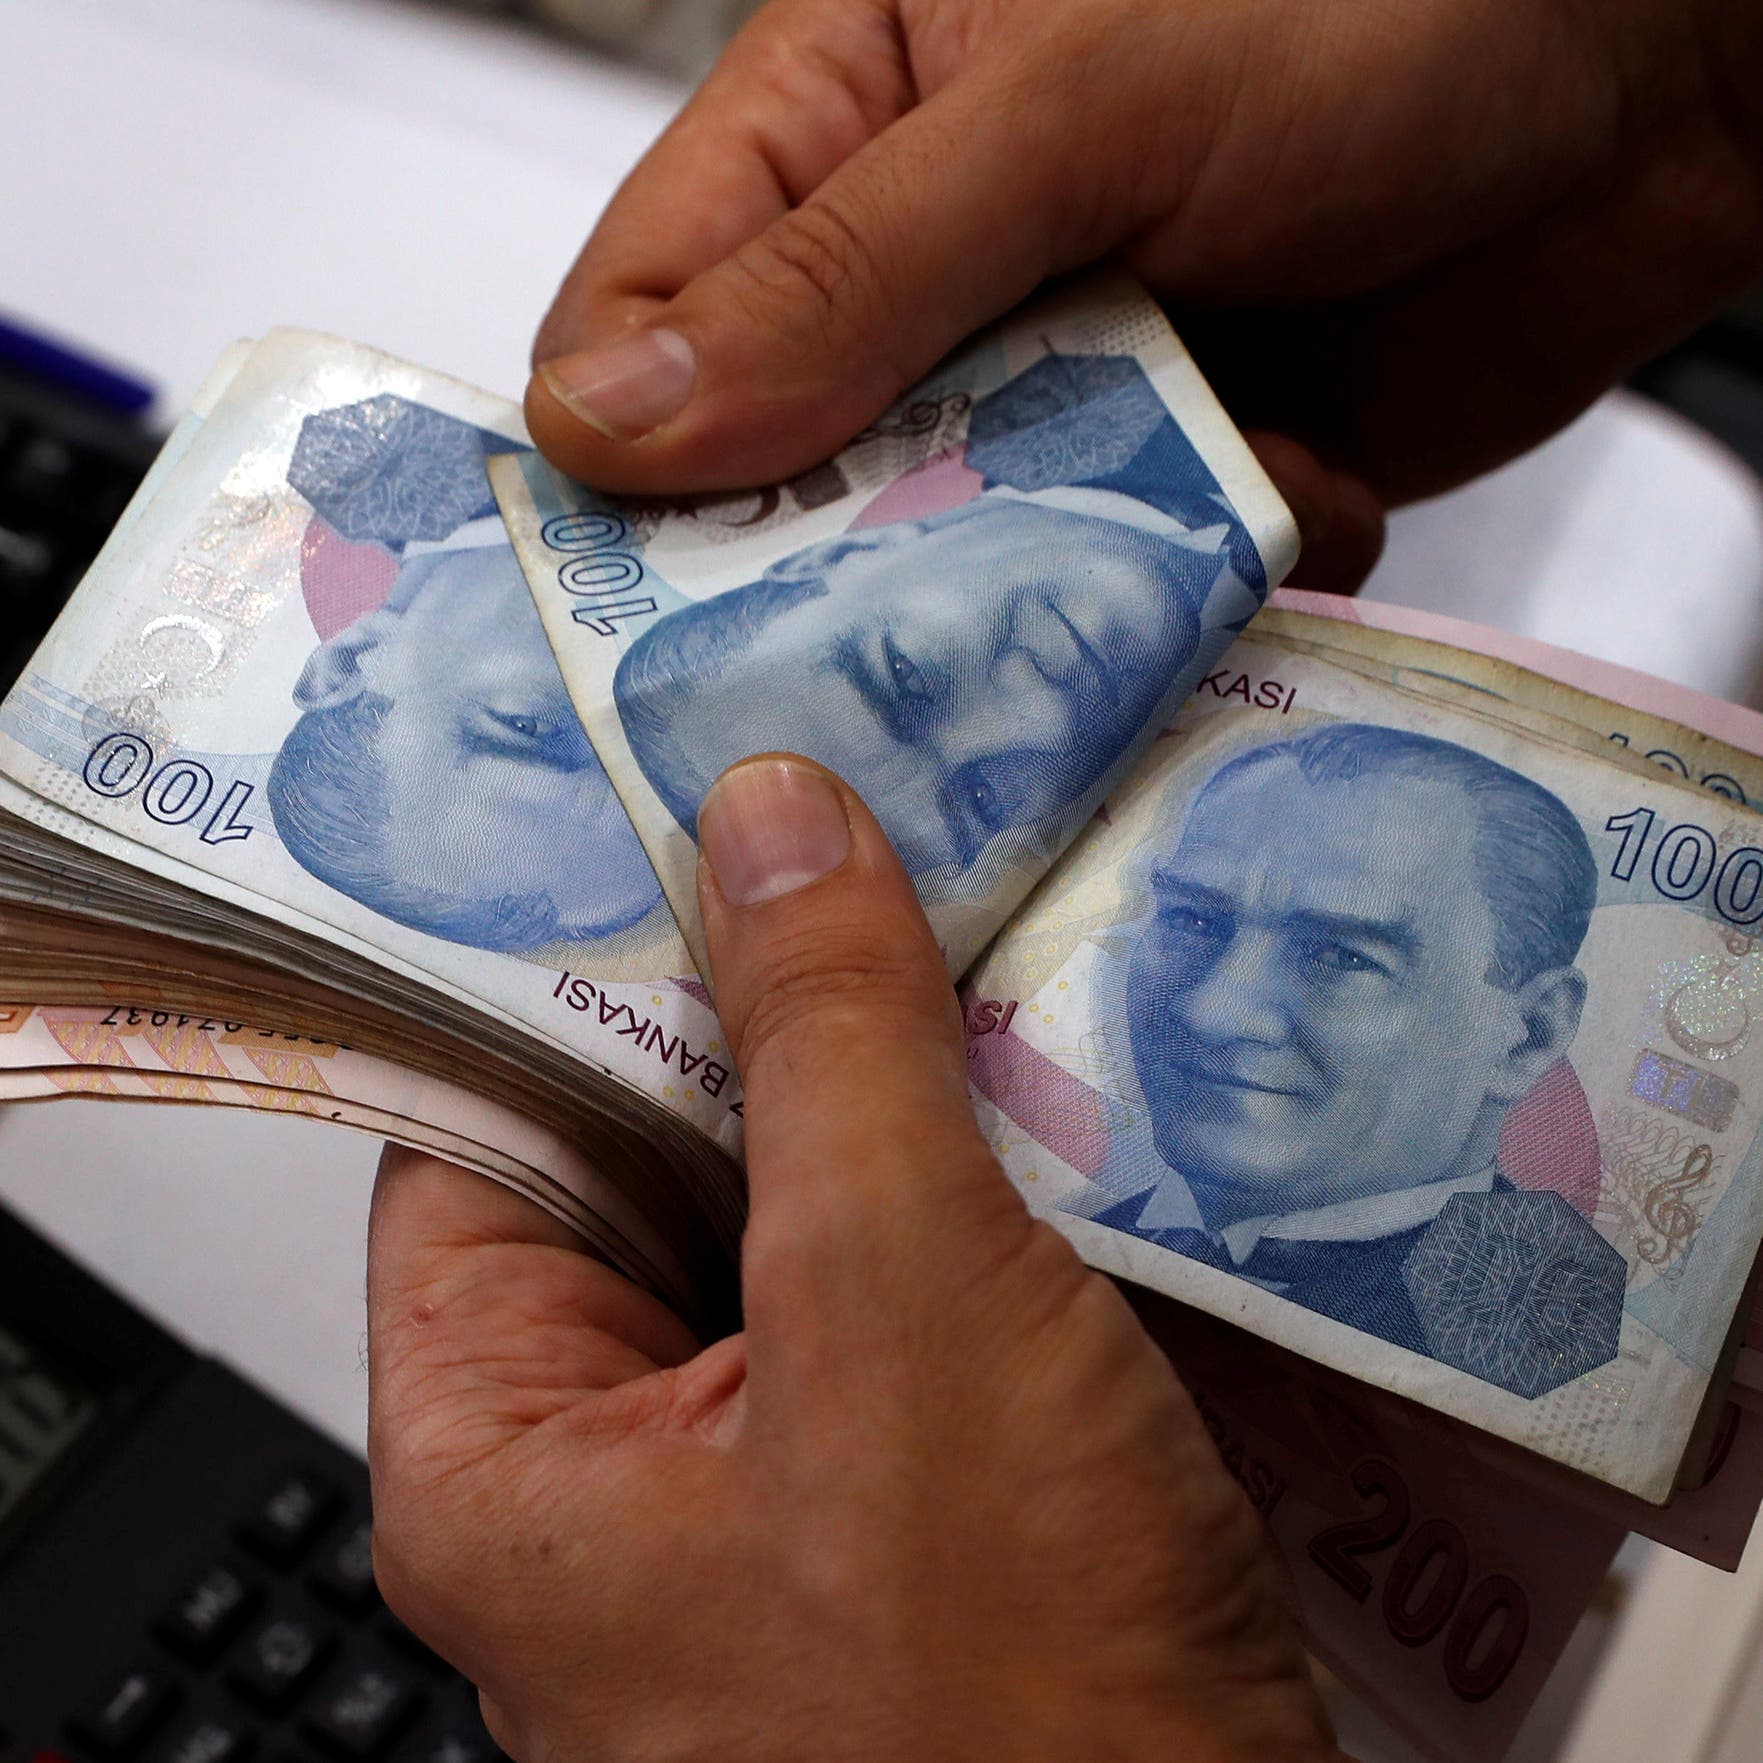 تركيا ترفع اتفاق مبادلة العملات مع الصين إلى 6 مليارات دولار